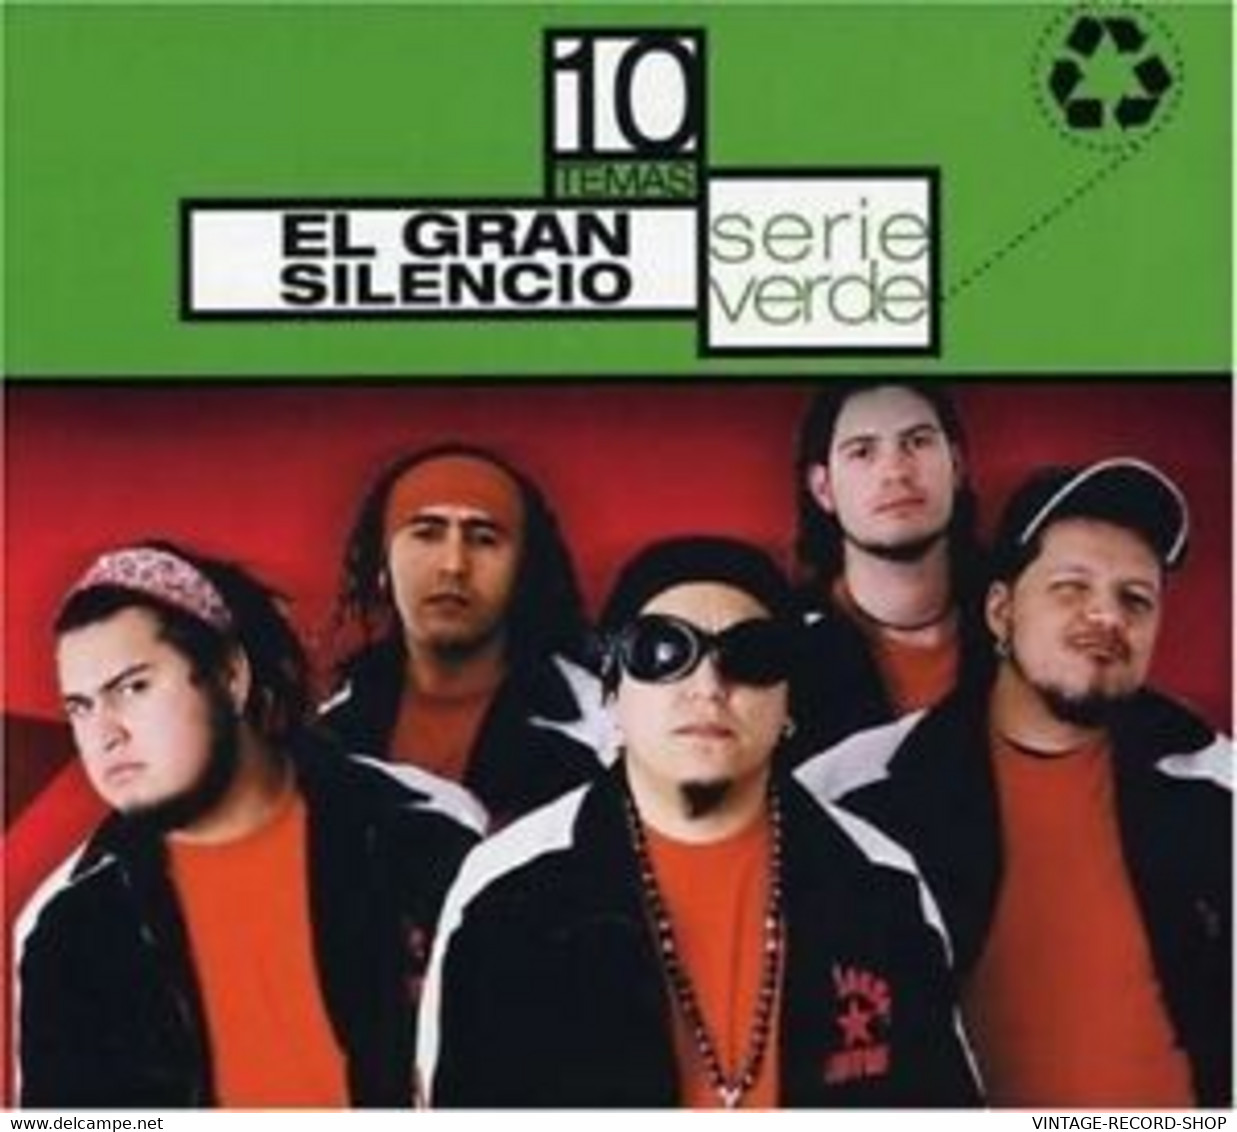 EL GRAN SILENCIO-SERIE VERDE 10 TEMAS-EMI -TELEVISA-MUSIC-2007 CD - Autres - Musique Espagnole